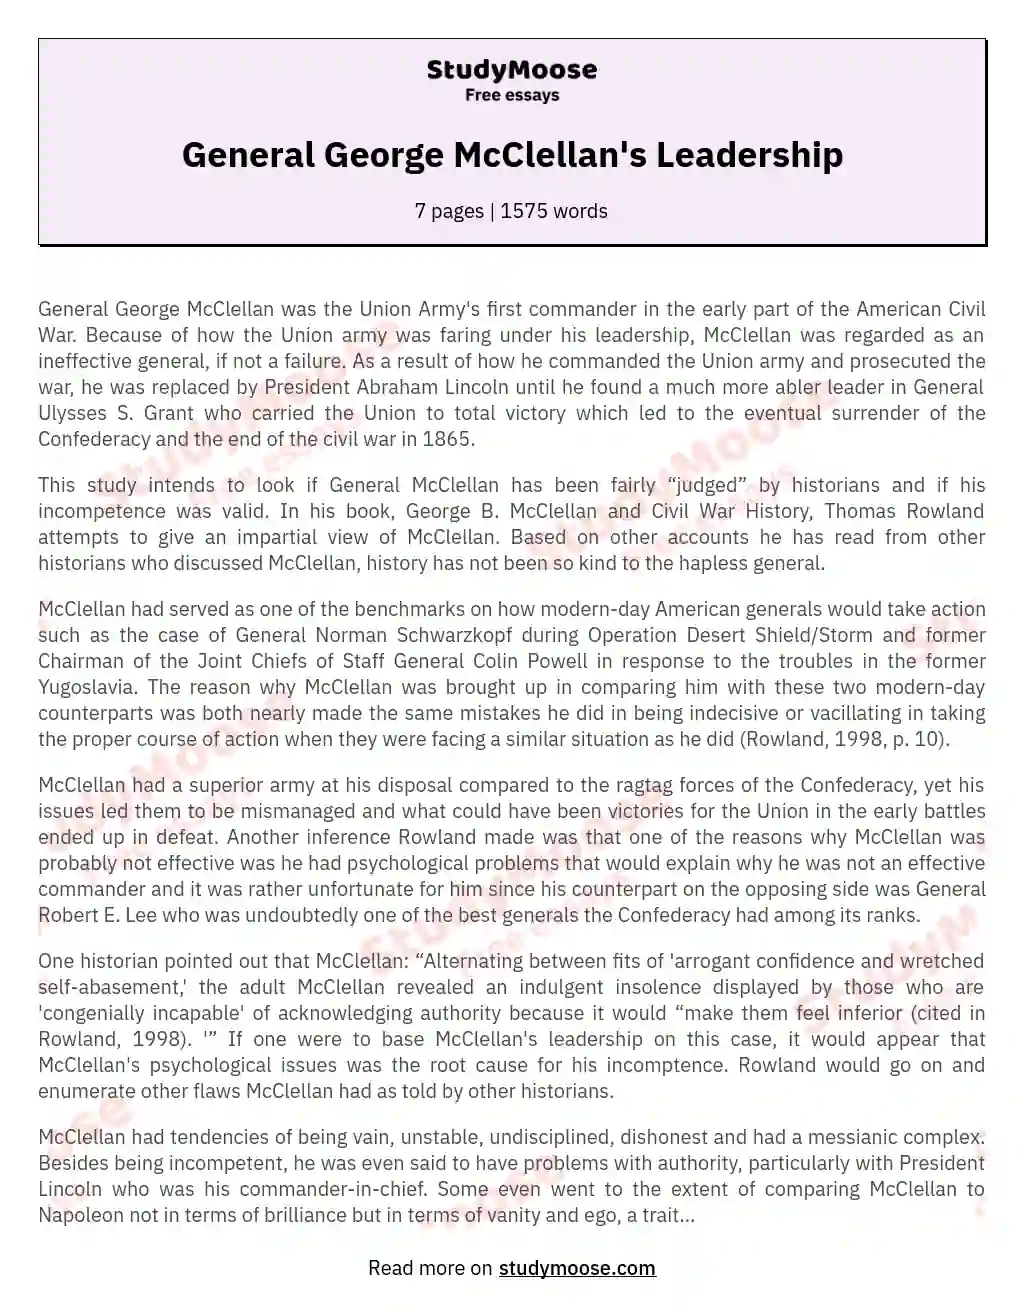 General George McClellan's Leadership essay